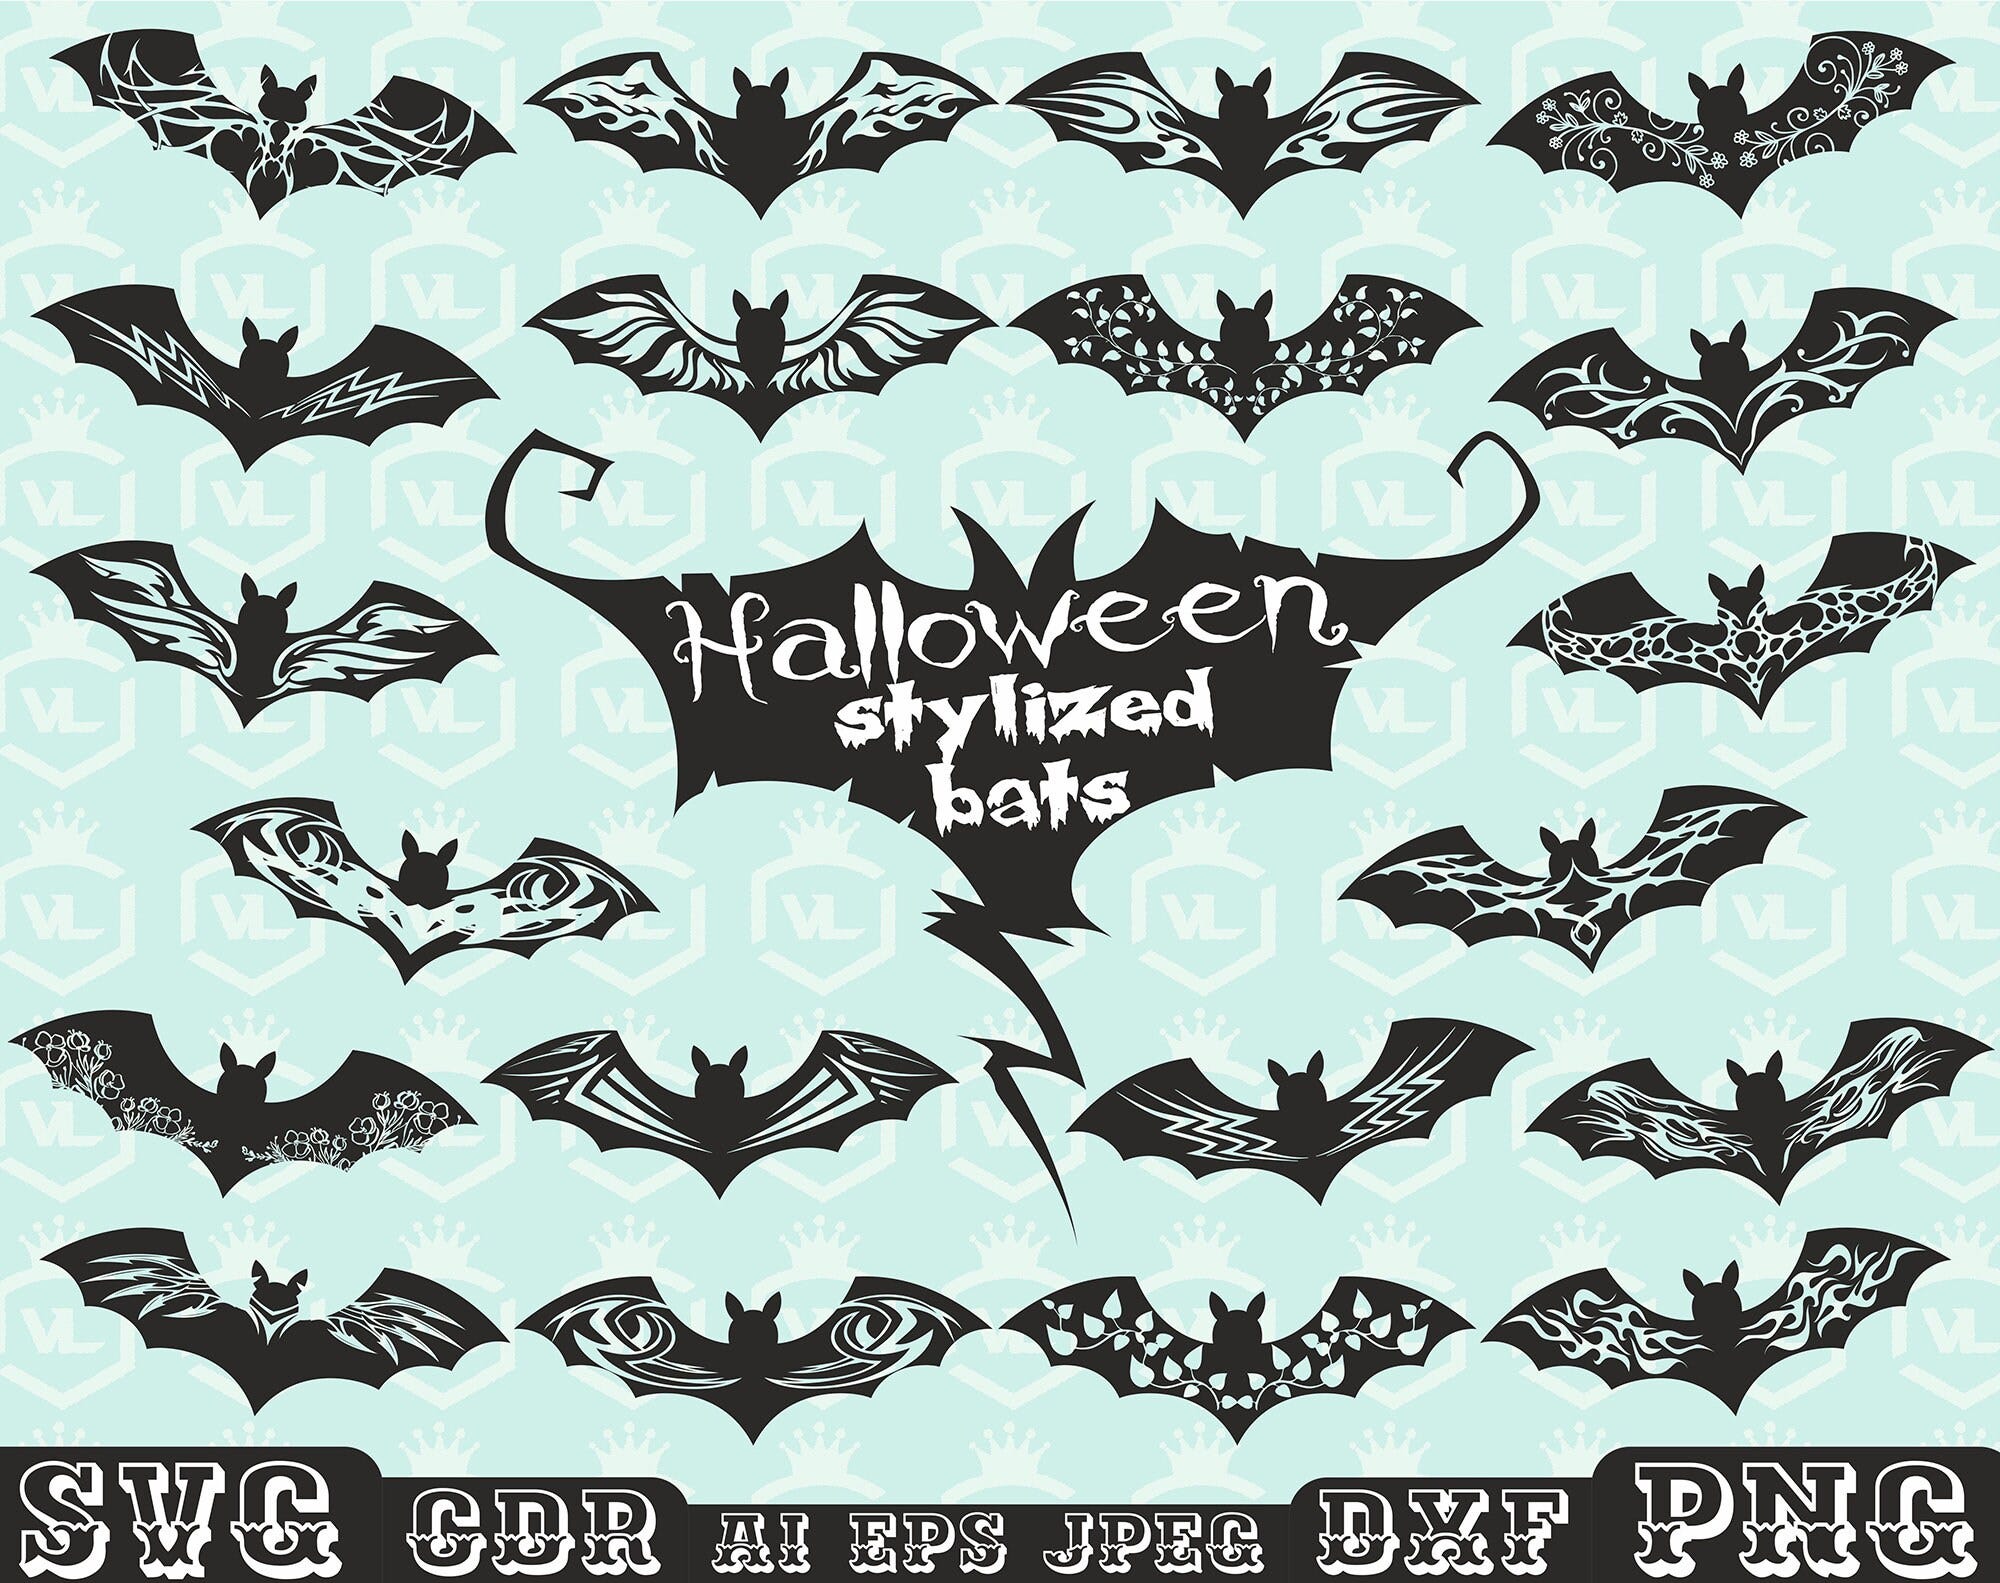 Halloween bat decor SVG bundle, Bat clipart, Bat design Png Eps, Bat silhouette, Spooky bat, Boo, Trick or Treat, Transparent background